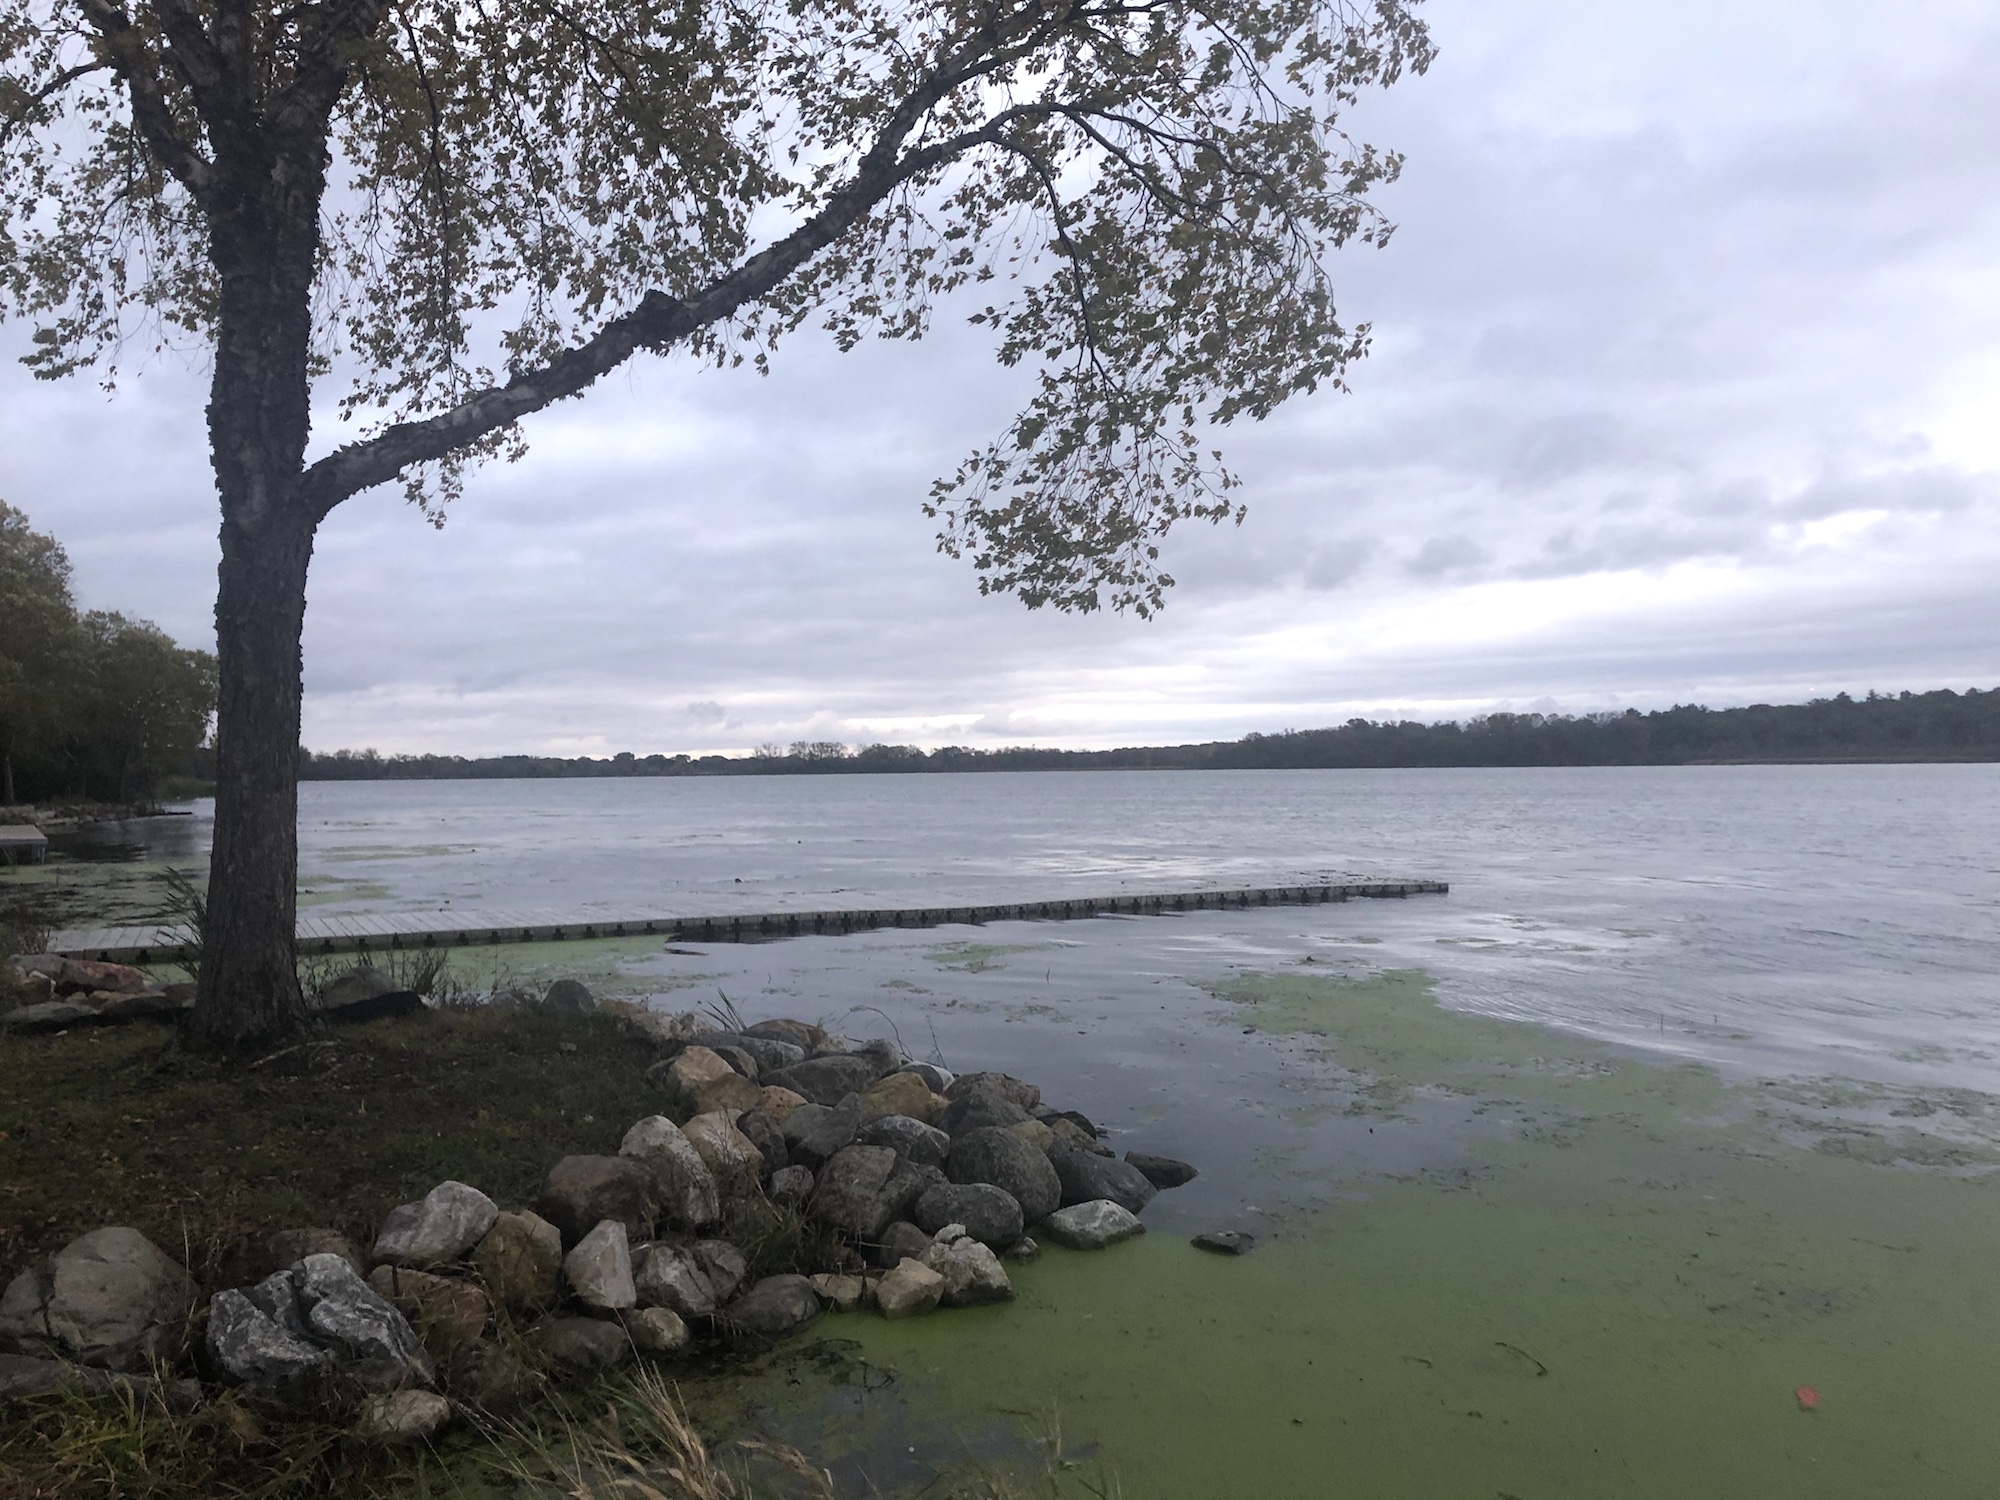 Lake Wingra on October 13, 2019.